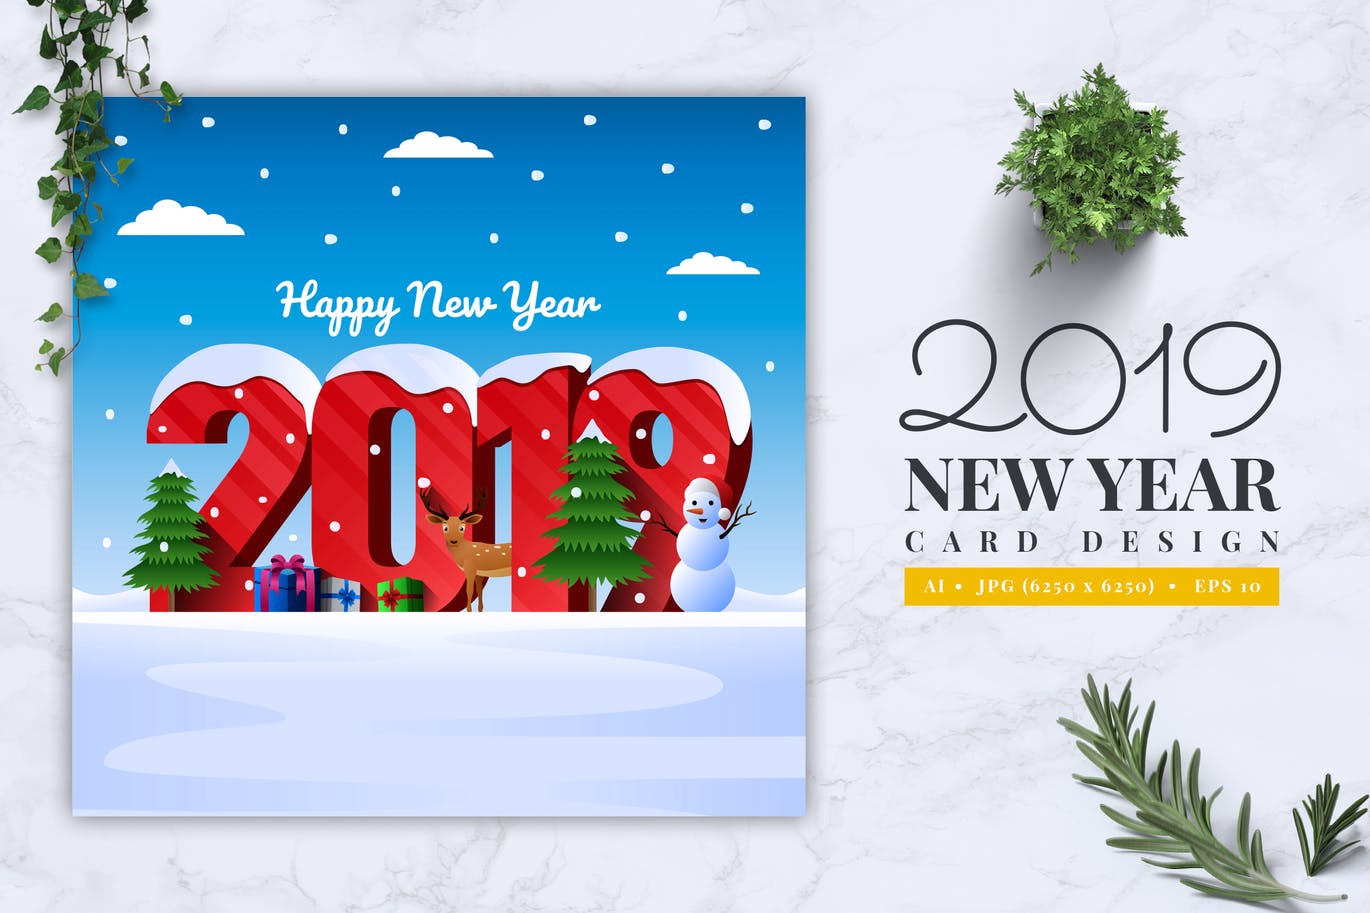 立体字体新年贺卡设计模板v1 2019 New Year Card Design Vol. 01插图